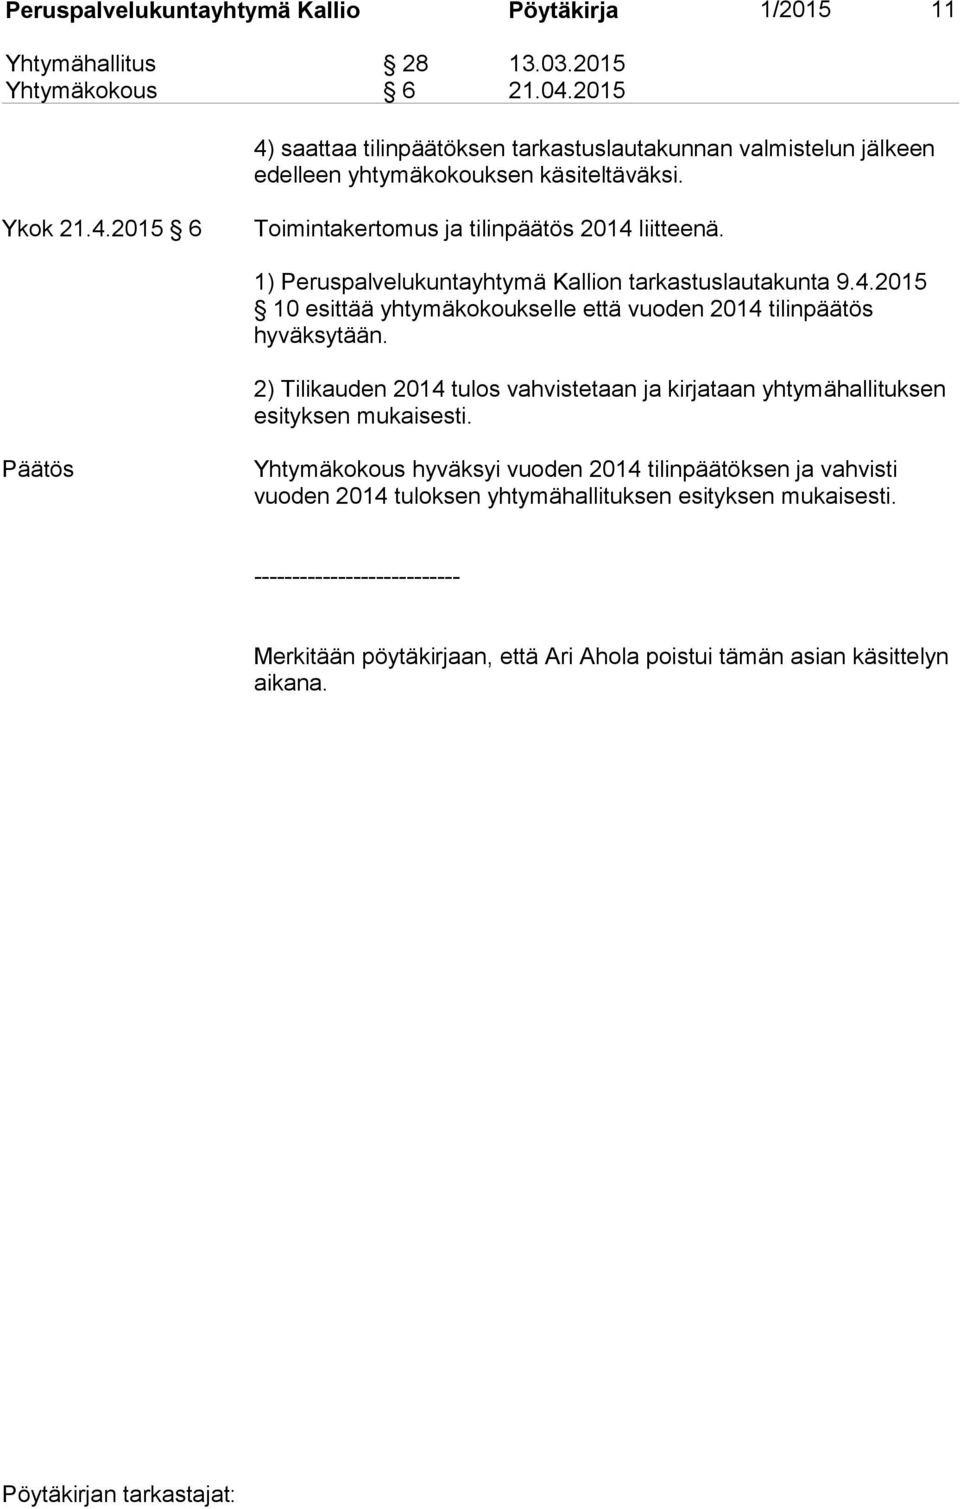 1) Peruspalvelukuntayhtymä Kallion tarkastuslautakunta 9.4.2015 10 esittää yhtymäkokoukselle että vuoden 2014 tilinpäätös hyväksytään.